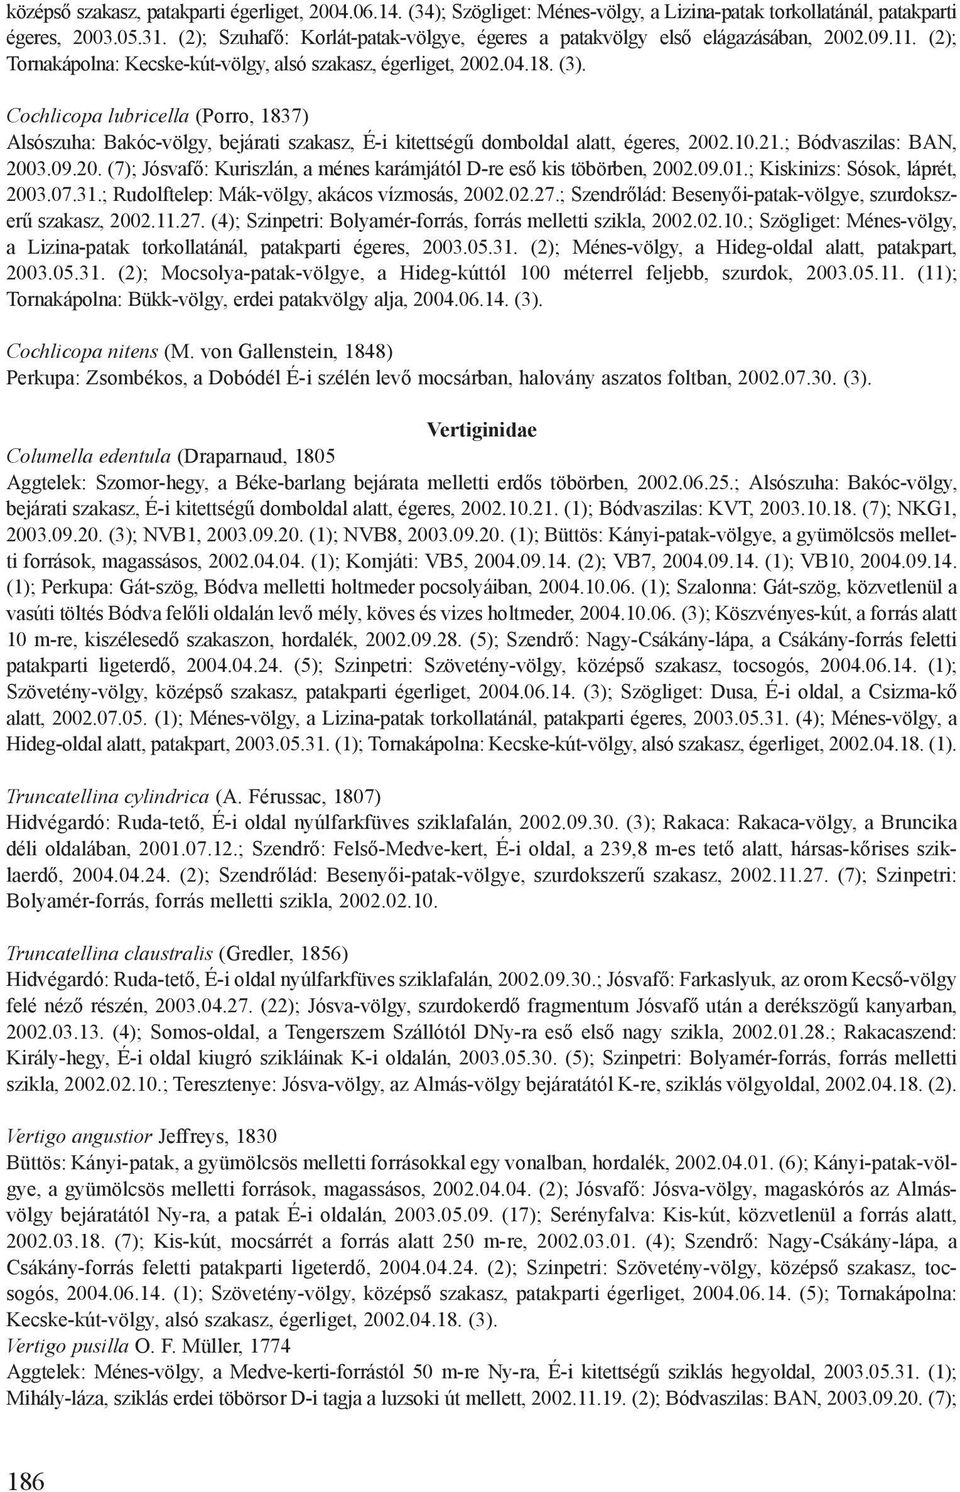 Cochlicopa lubricella (Porro, 1837) Alsószuha: Bakóc-völgy, bejárati szakasz, É-i kitettségű domboldal alatt, égeres, 2002.10.21.; Bódvaszilas: BAN, 2003.09.20. (7); Jósvafő: Kuriszlán, a ménes karámjától D-re eső kis töbörben, 2002.